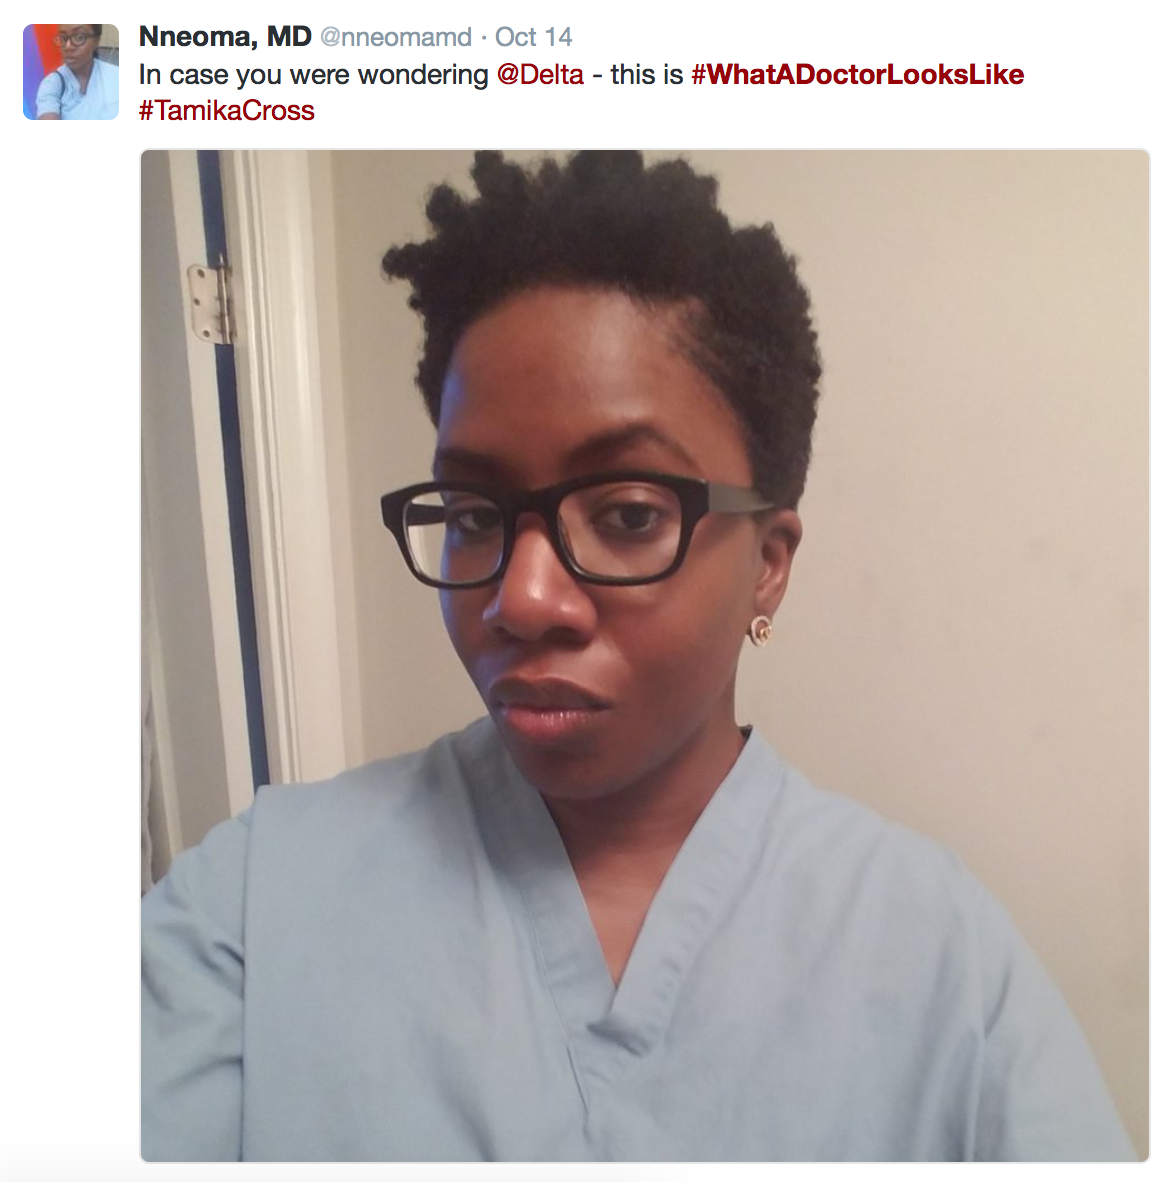 black female doctor